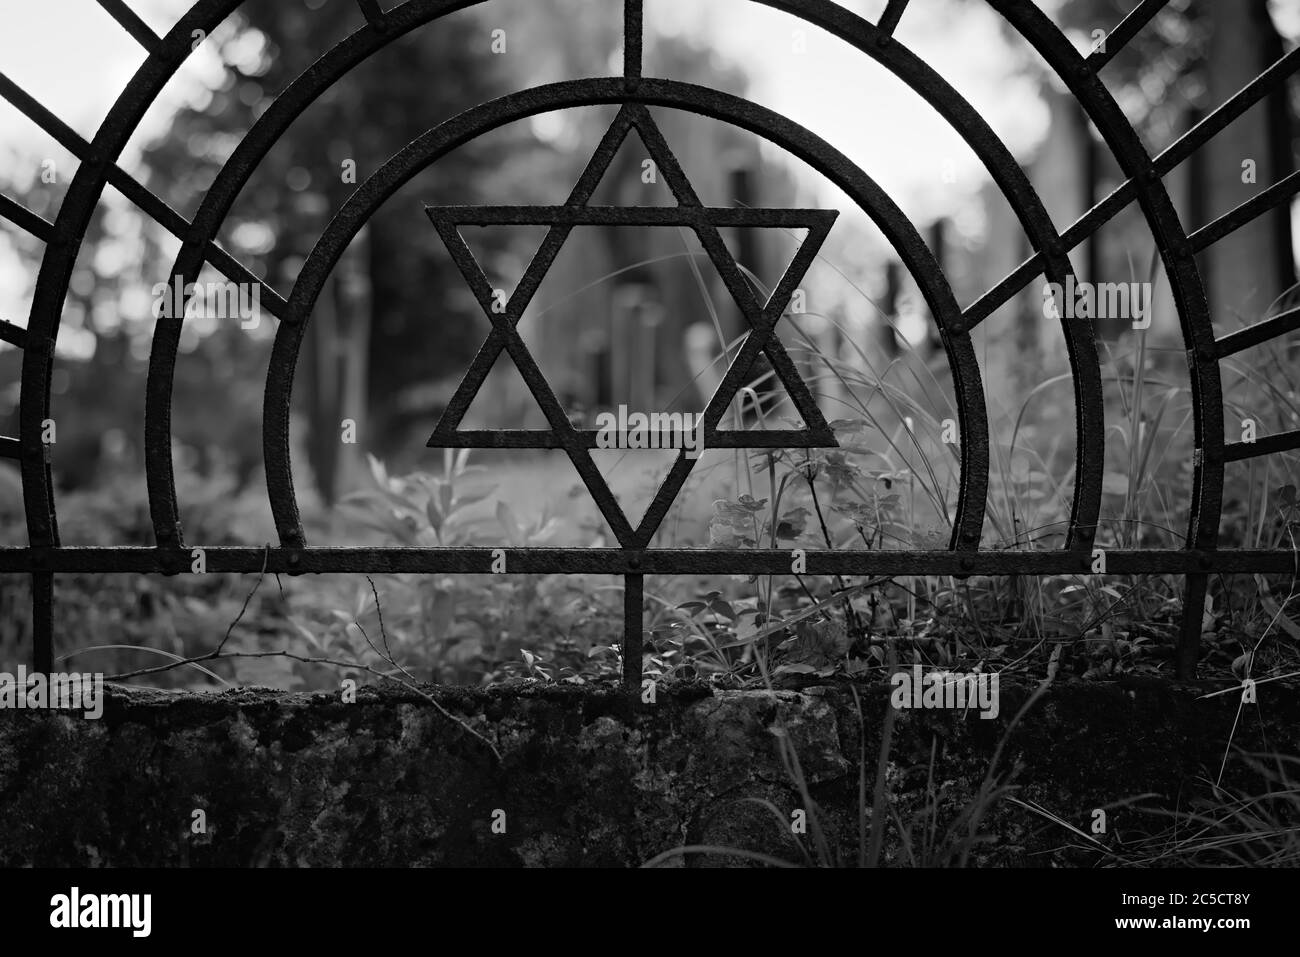 Cimitero ebraico erboso fuori fuoco, attraversato da Star of David all'interno di archi che fa parte di una copertura in acciaio intorno ad esso. Foto Stock